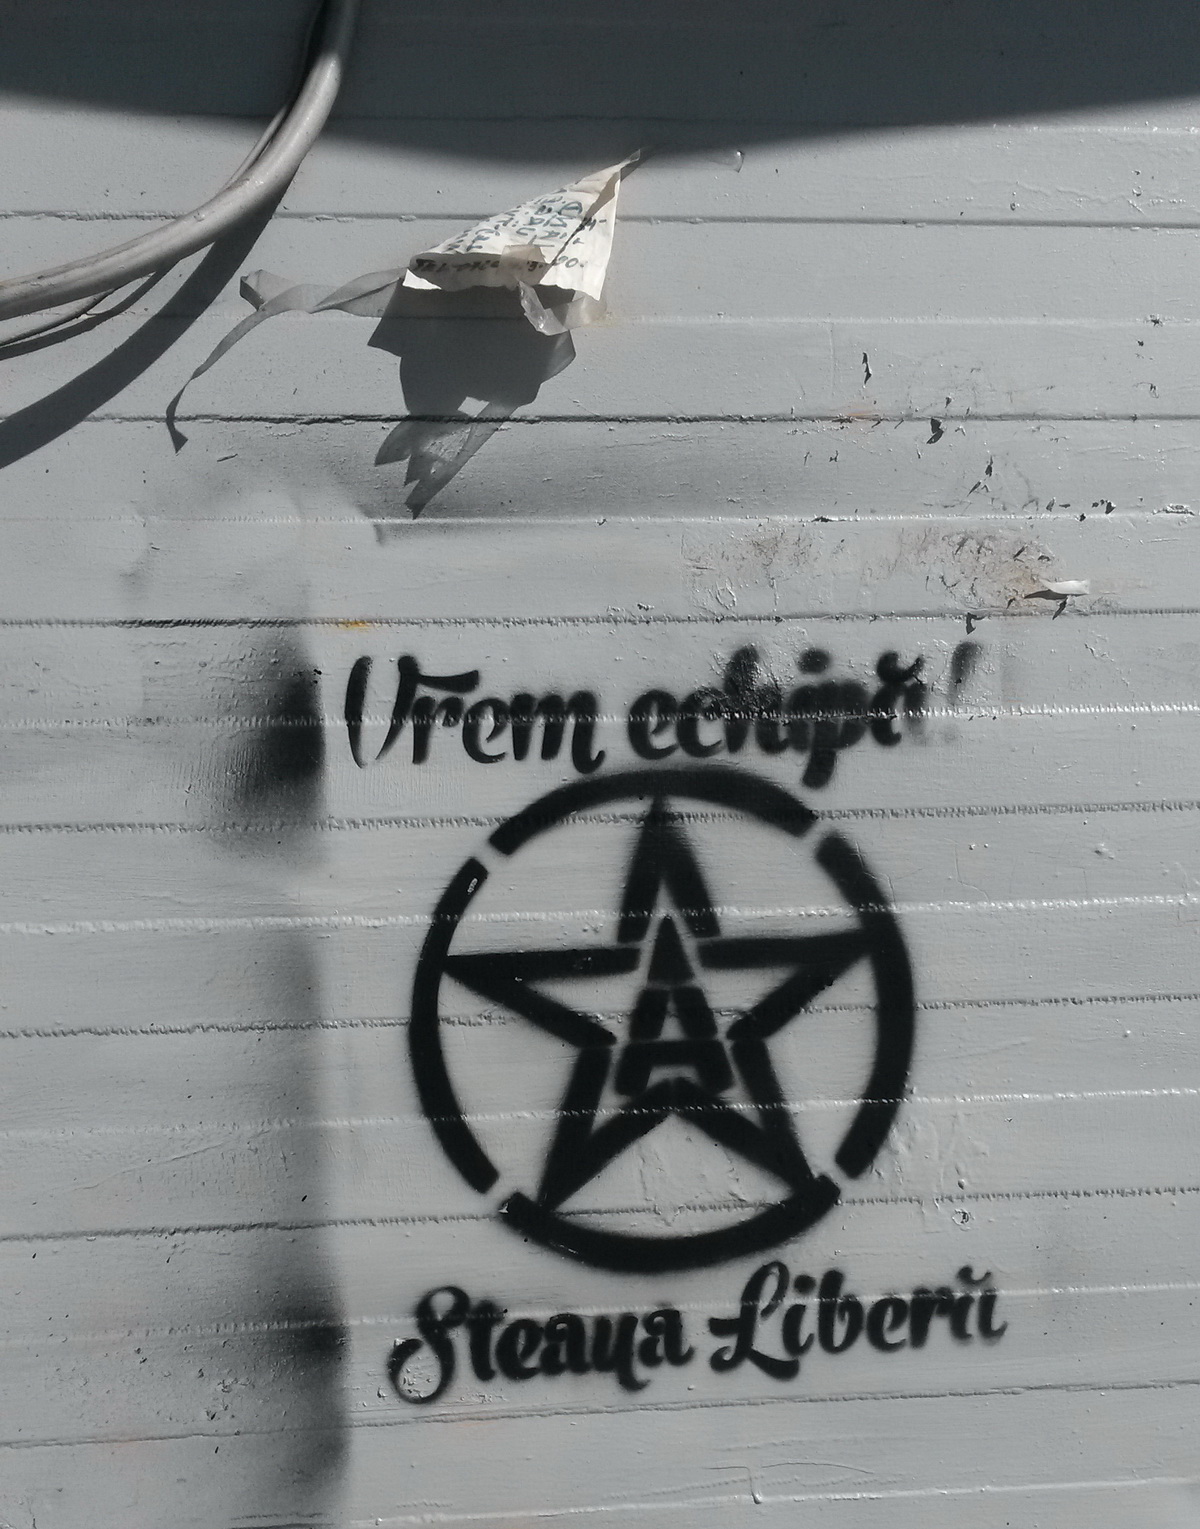 Acesta este mesajul pe care l-au desenat stelistii pe peretii din Bucuresti